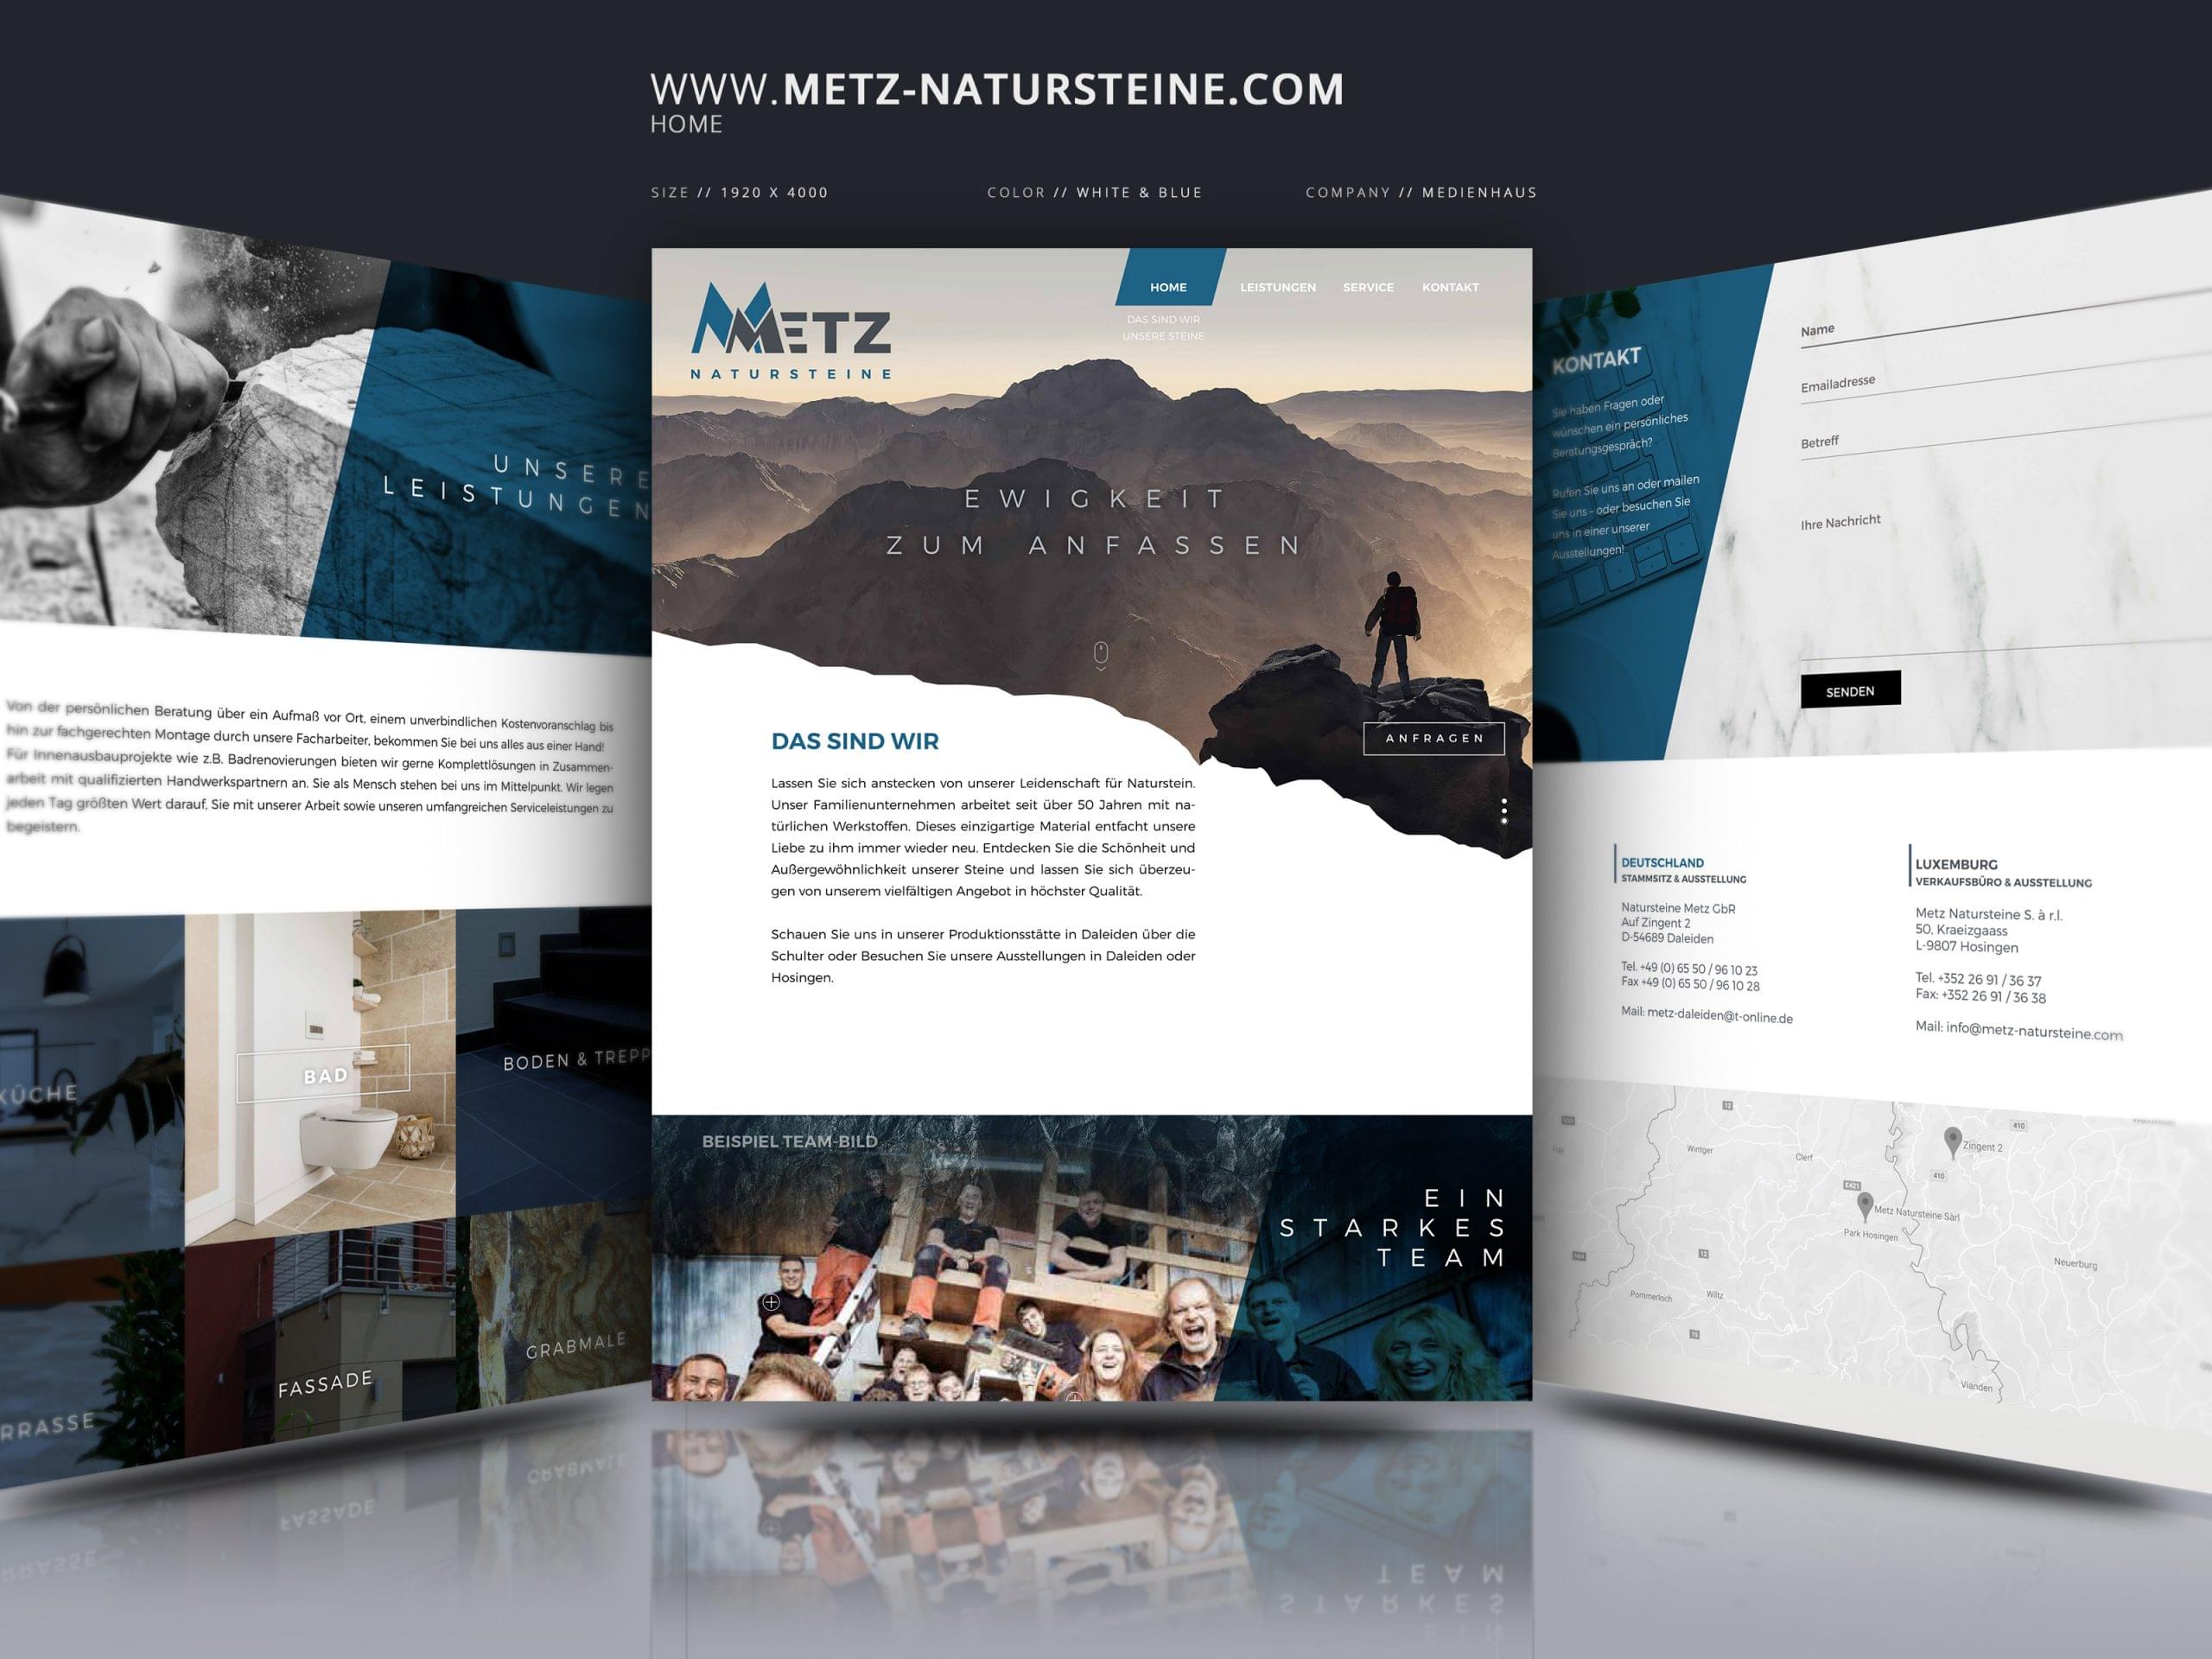 Metz Natursteine (www.metz-natursteine.com)